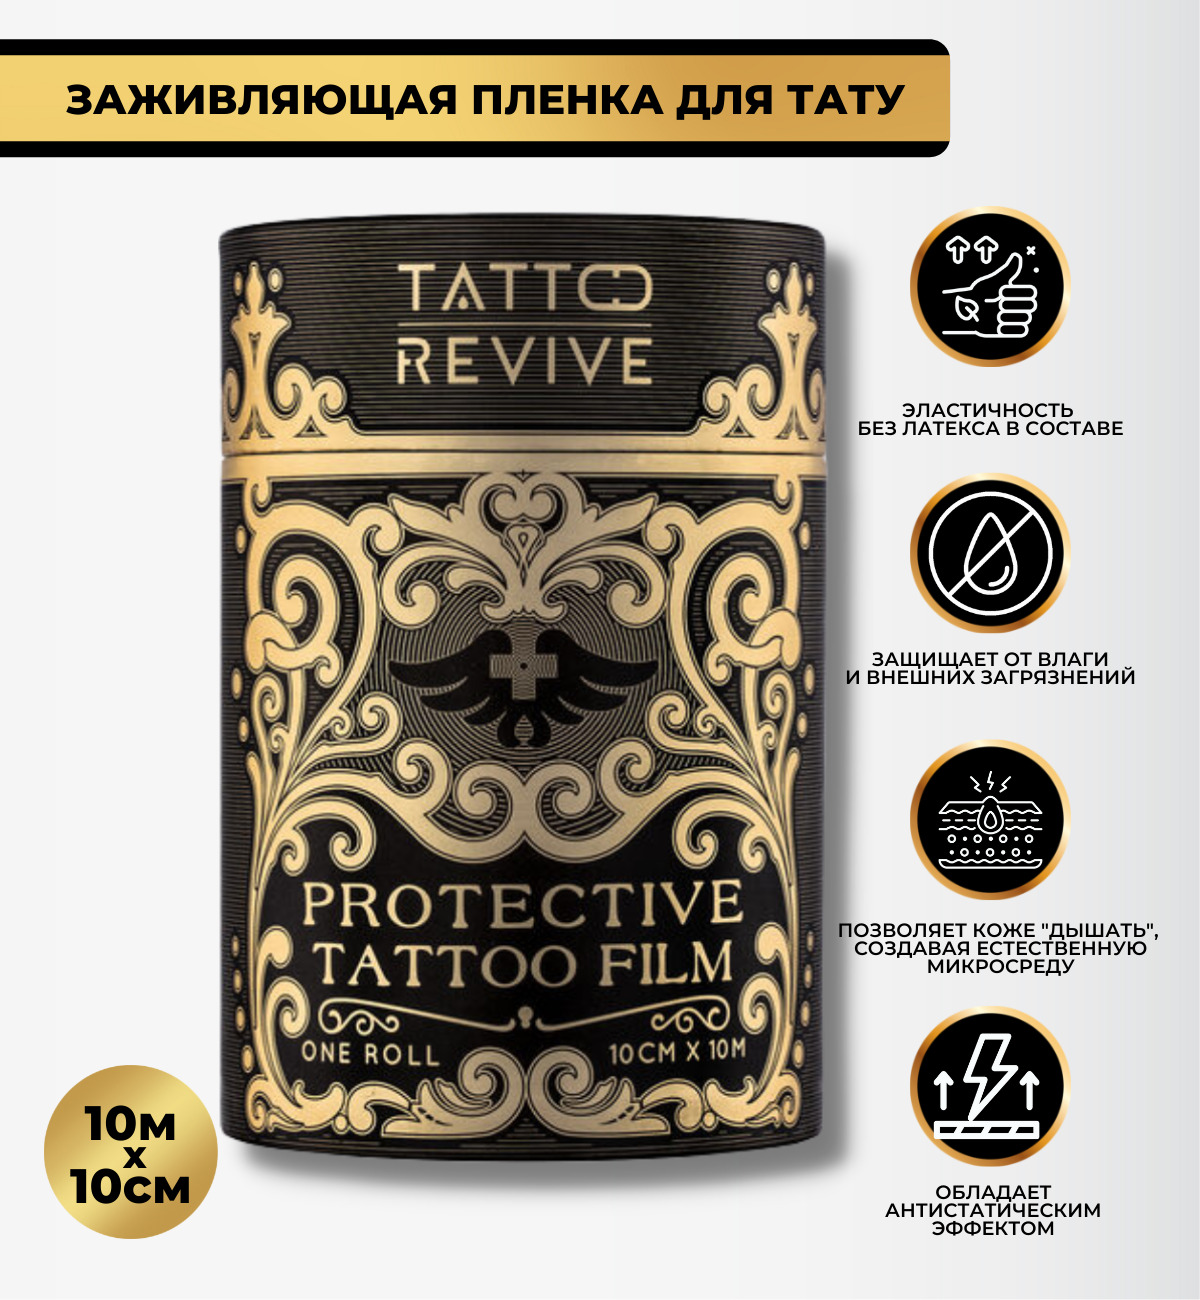 Protective Tattoo film, 20см х 30см, 1 шт